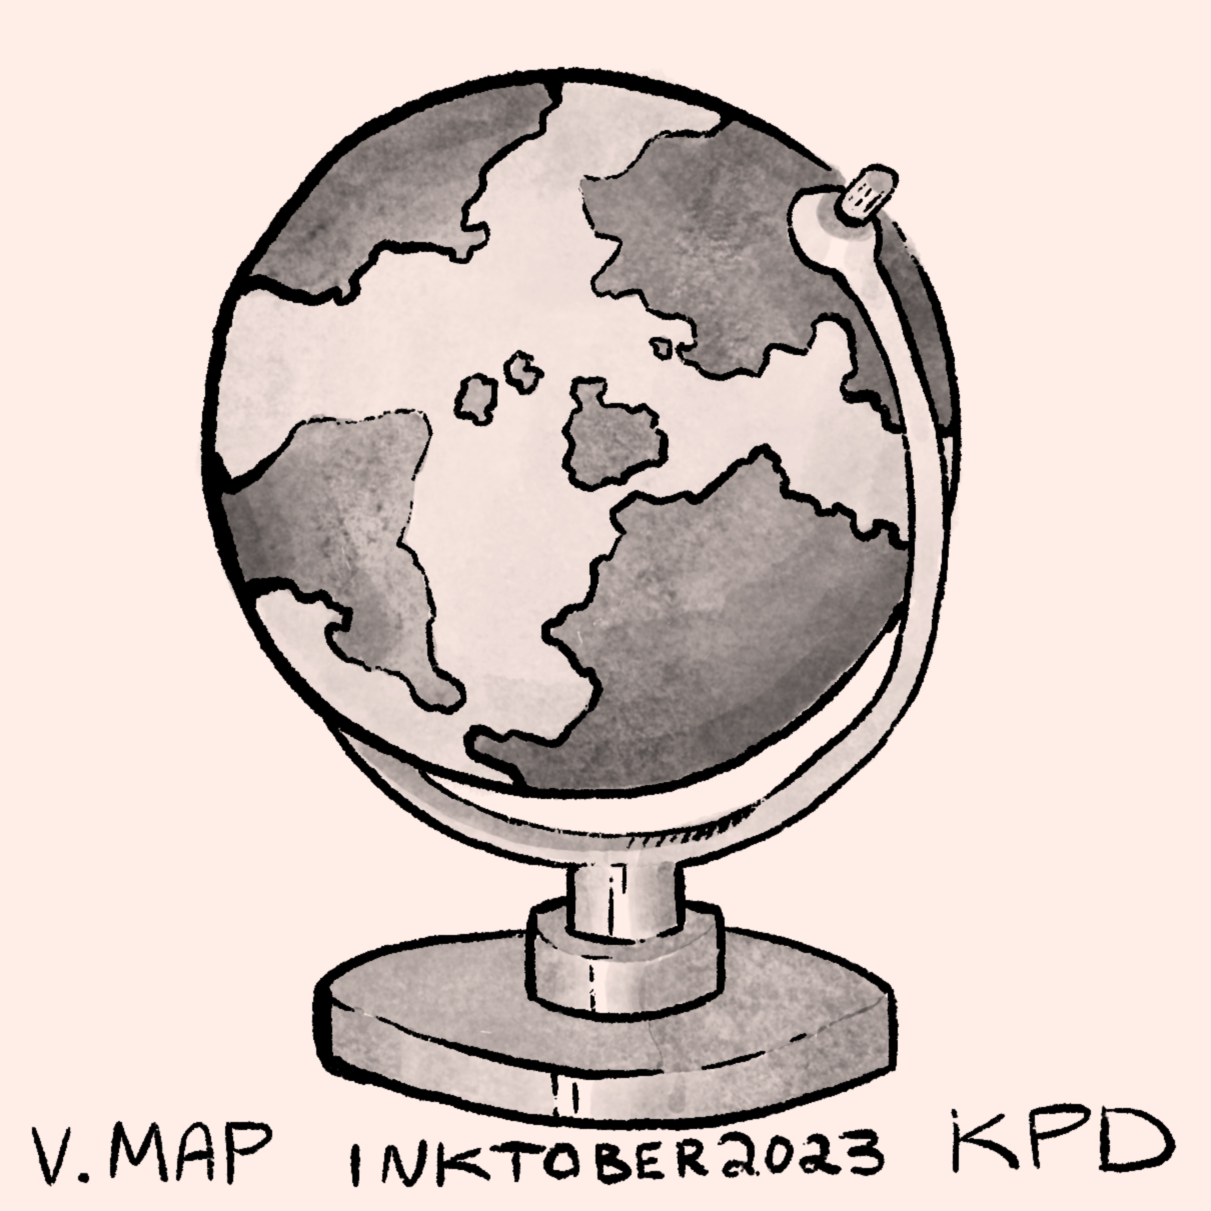 005 - Map